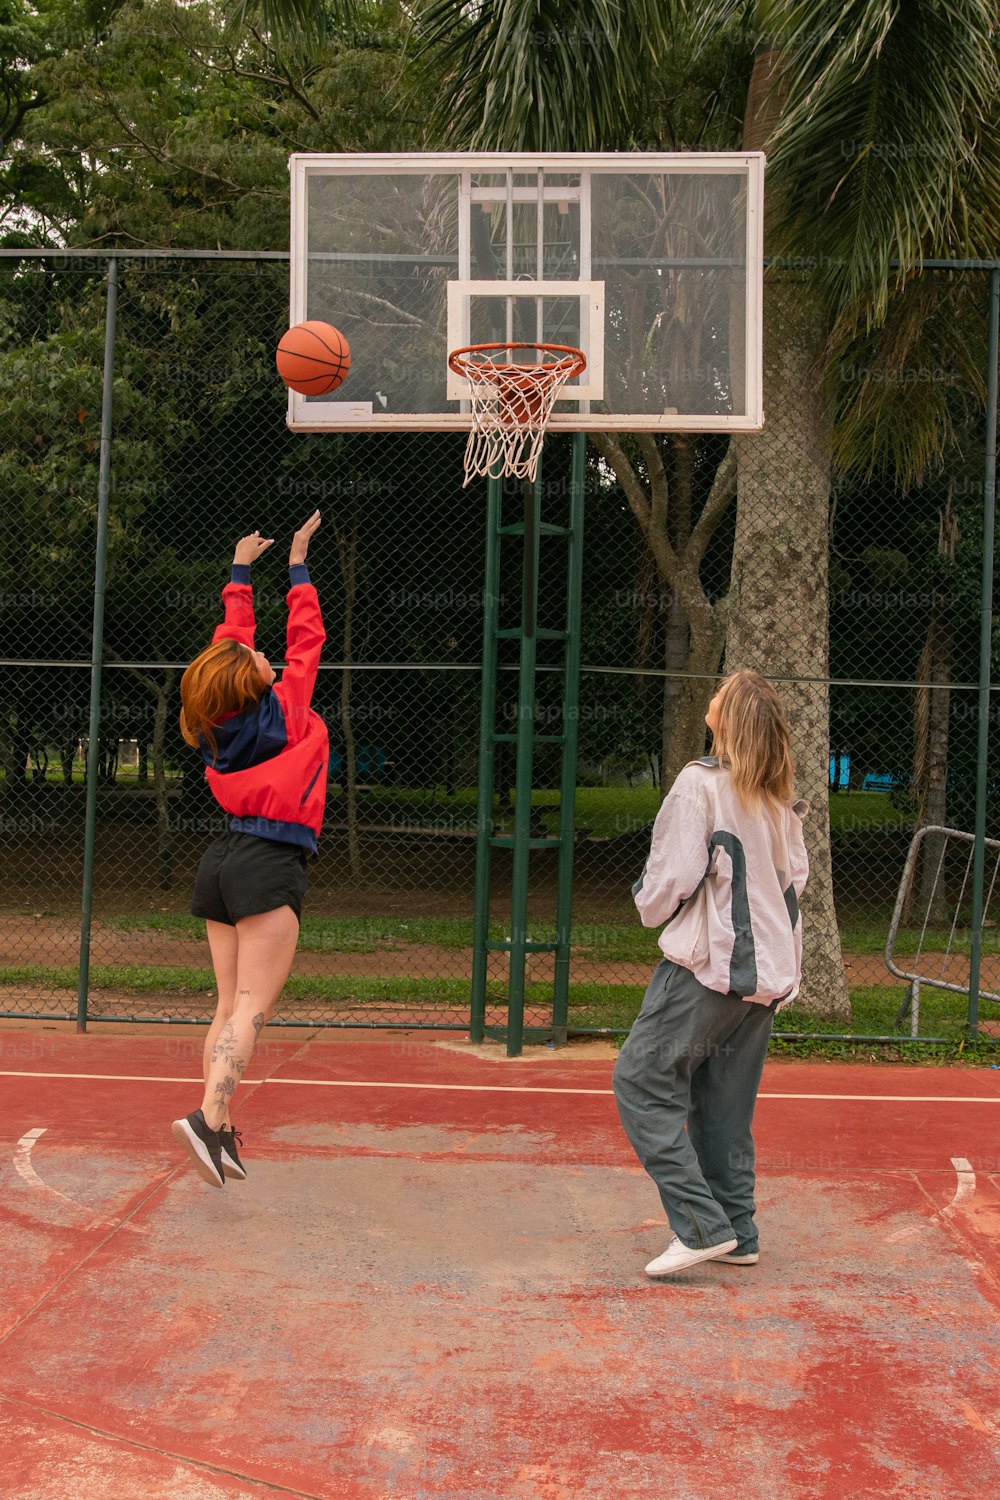 Zwei Personen spielen Basketball auf einem Basketballplatz